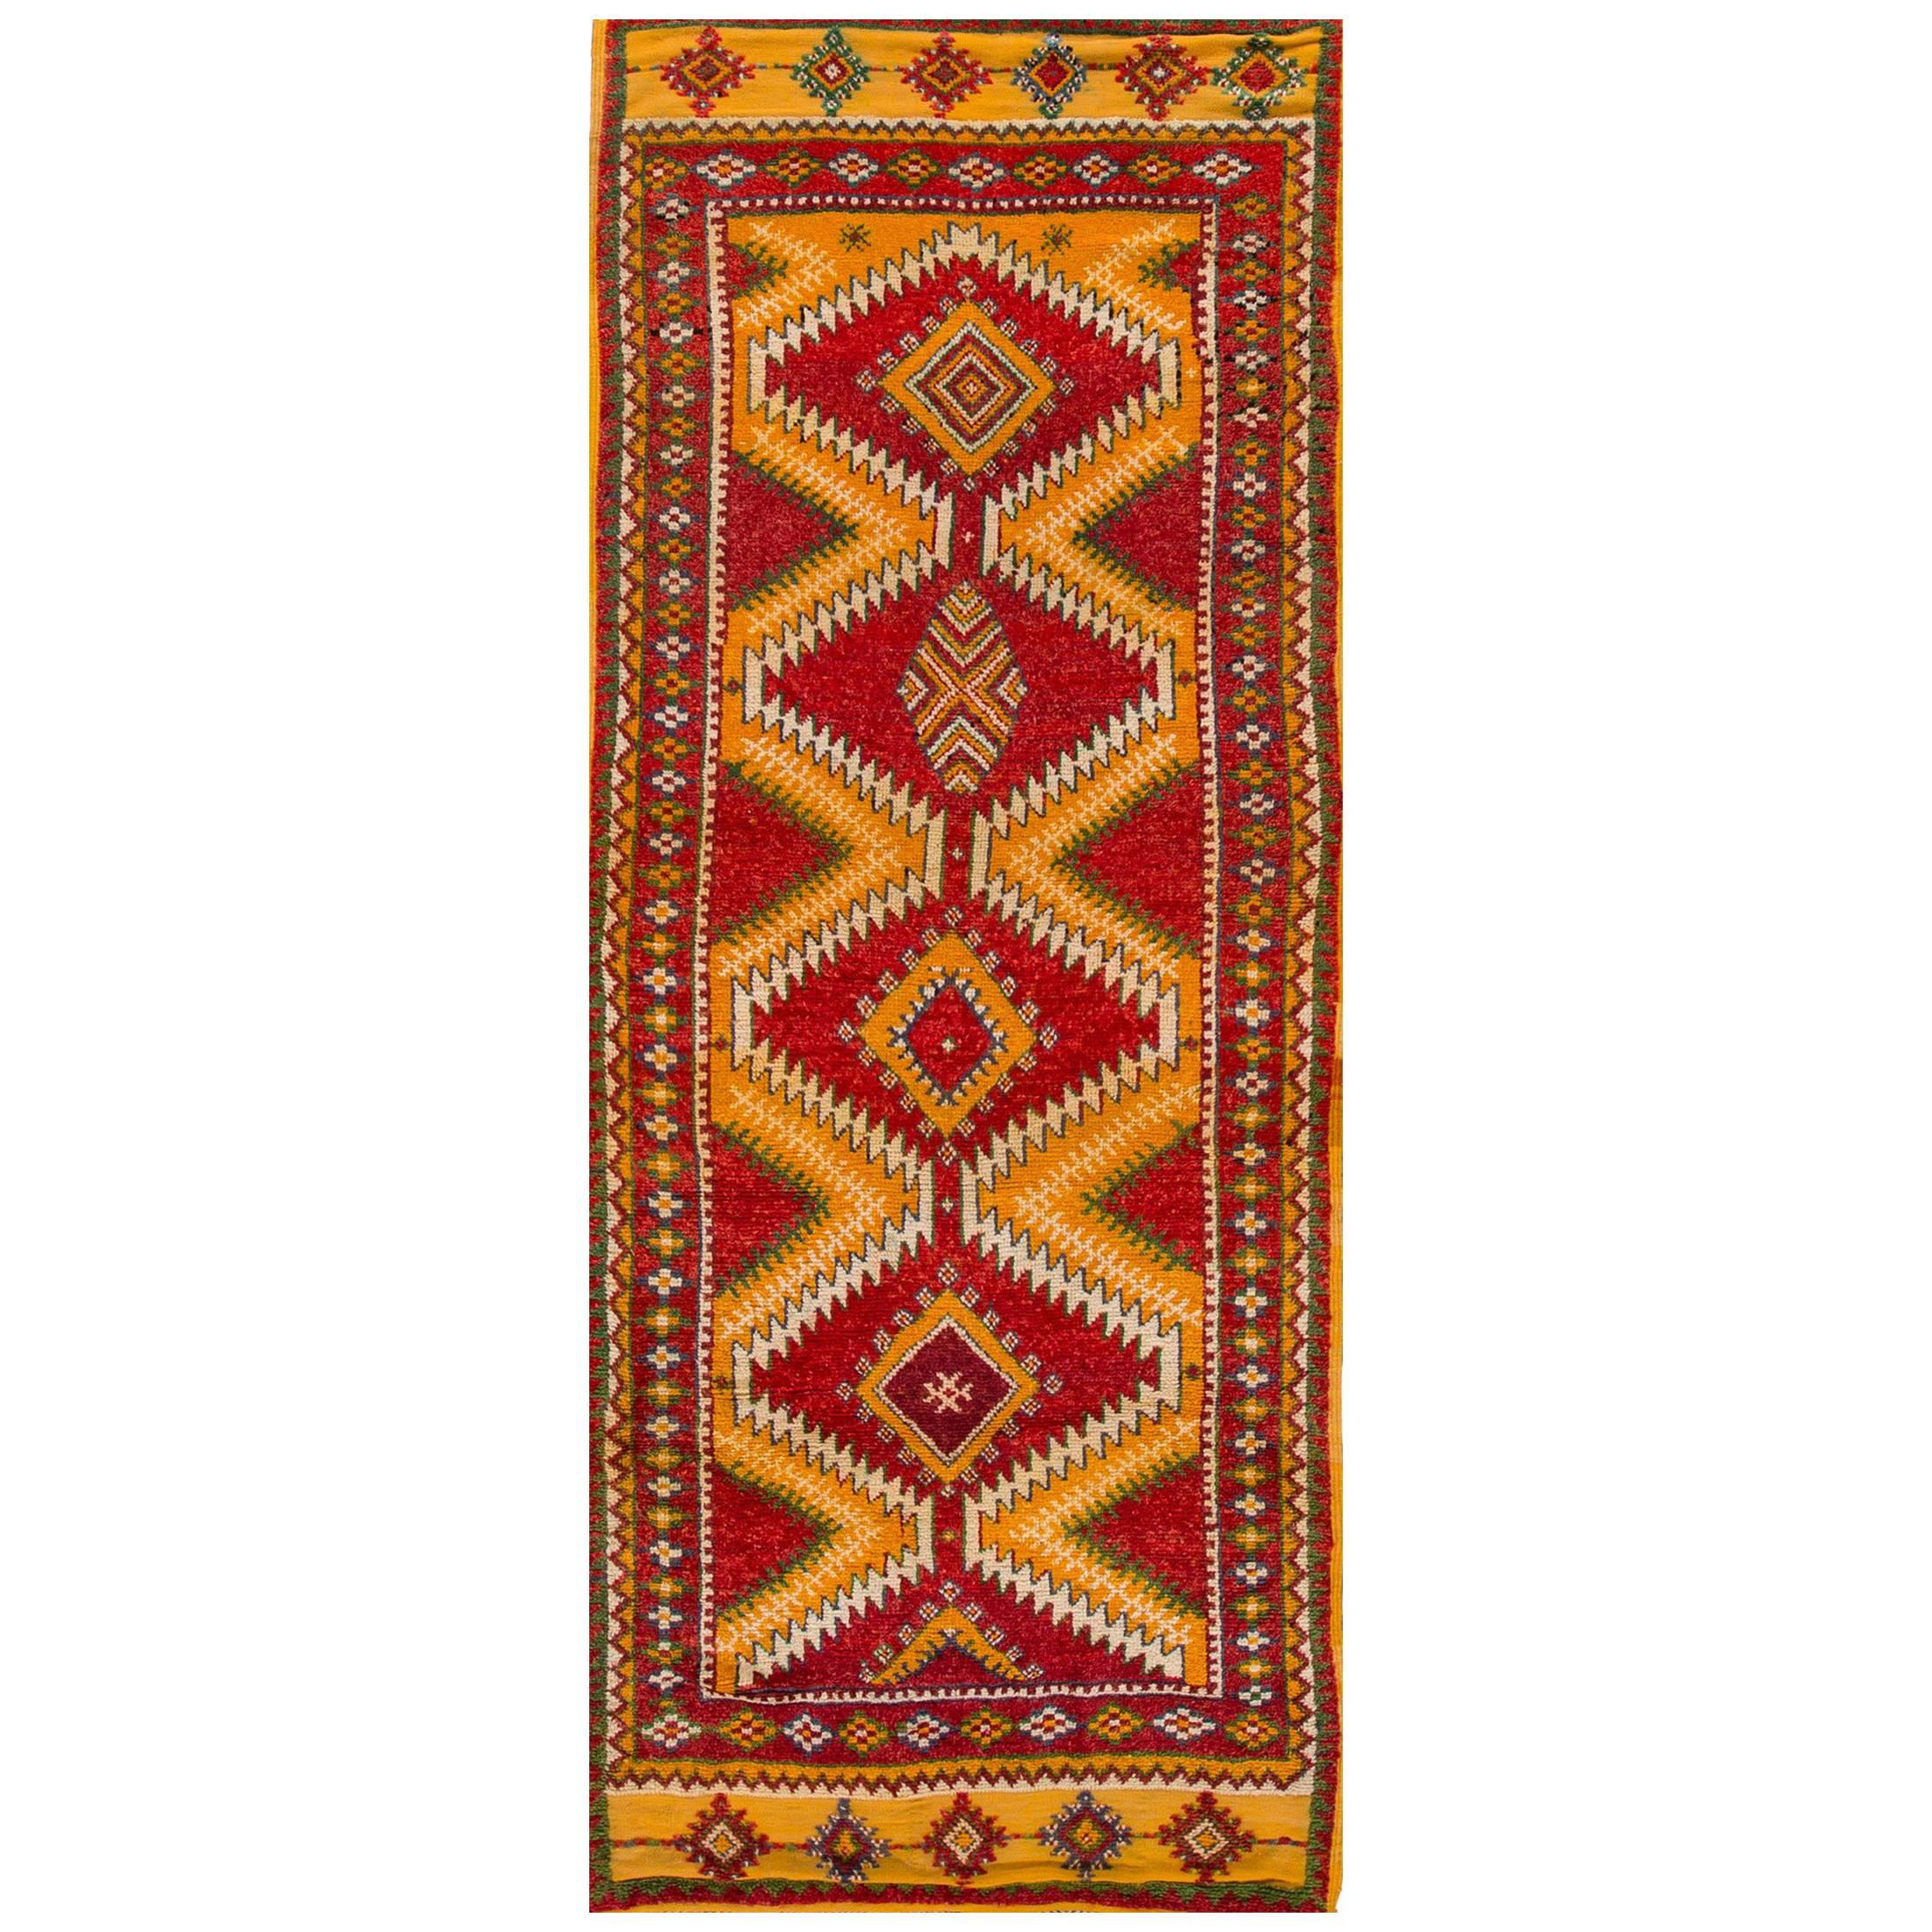 Marokkanischer Teppich-Läufer in Rot/Orange aus den 1930er Jahren